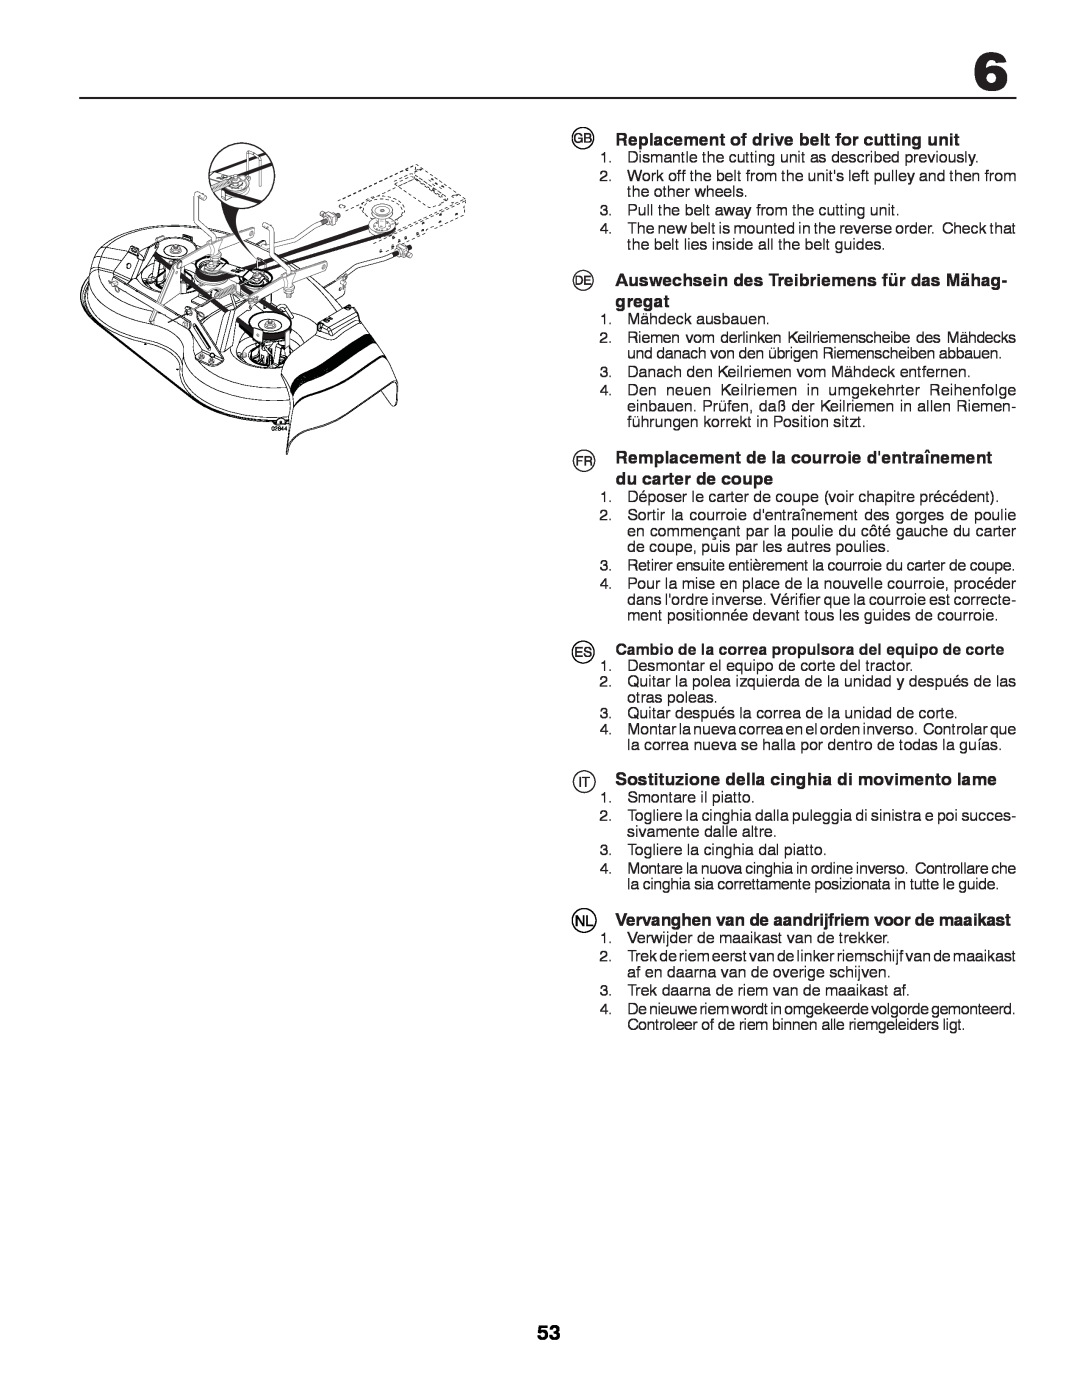 Husqvarna LT131 Replacement of drive belt for cutting unit, Auswechsein des Treibriemens für das Mähag, gregat 